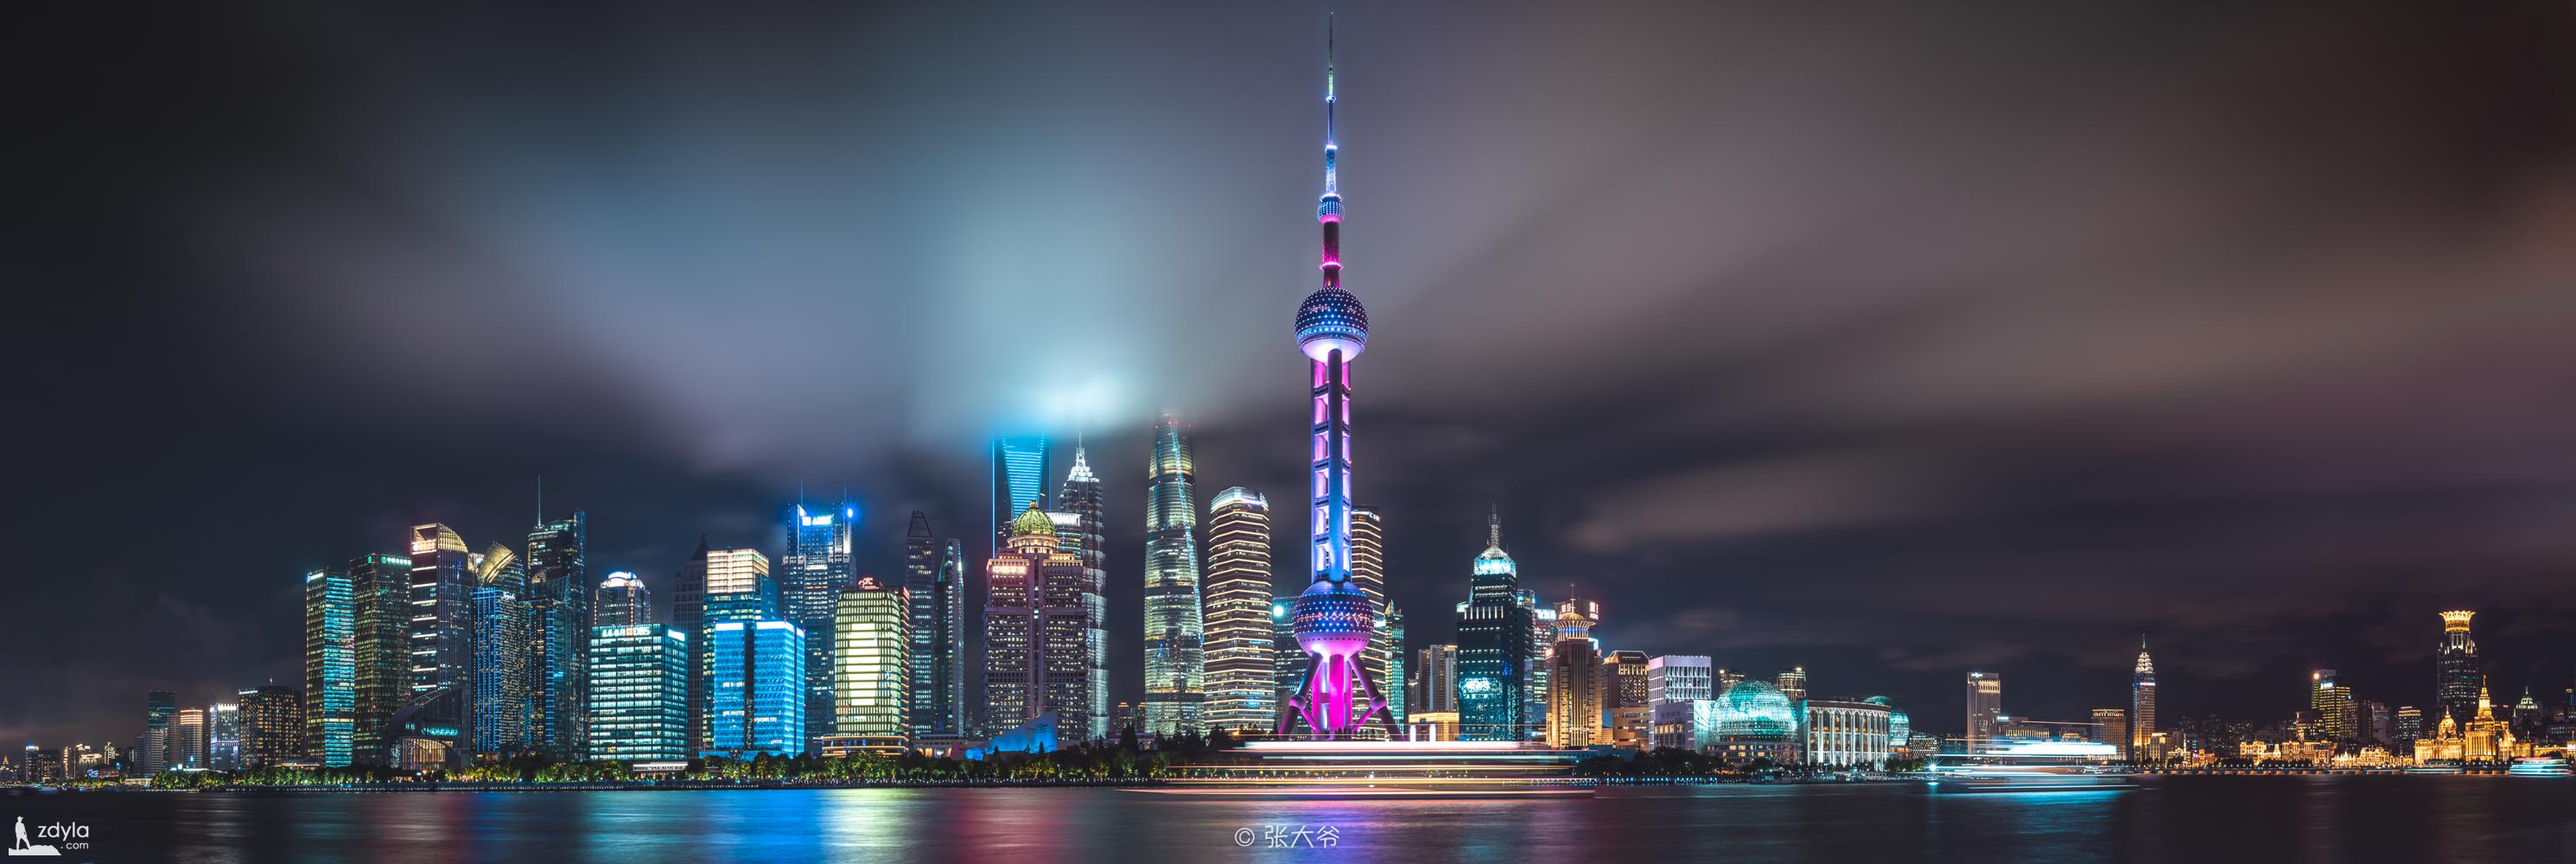 Shanghai skyline on the North Bund